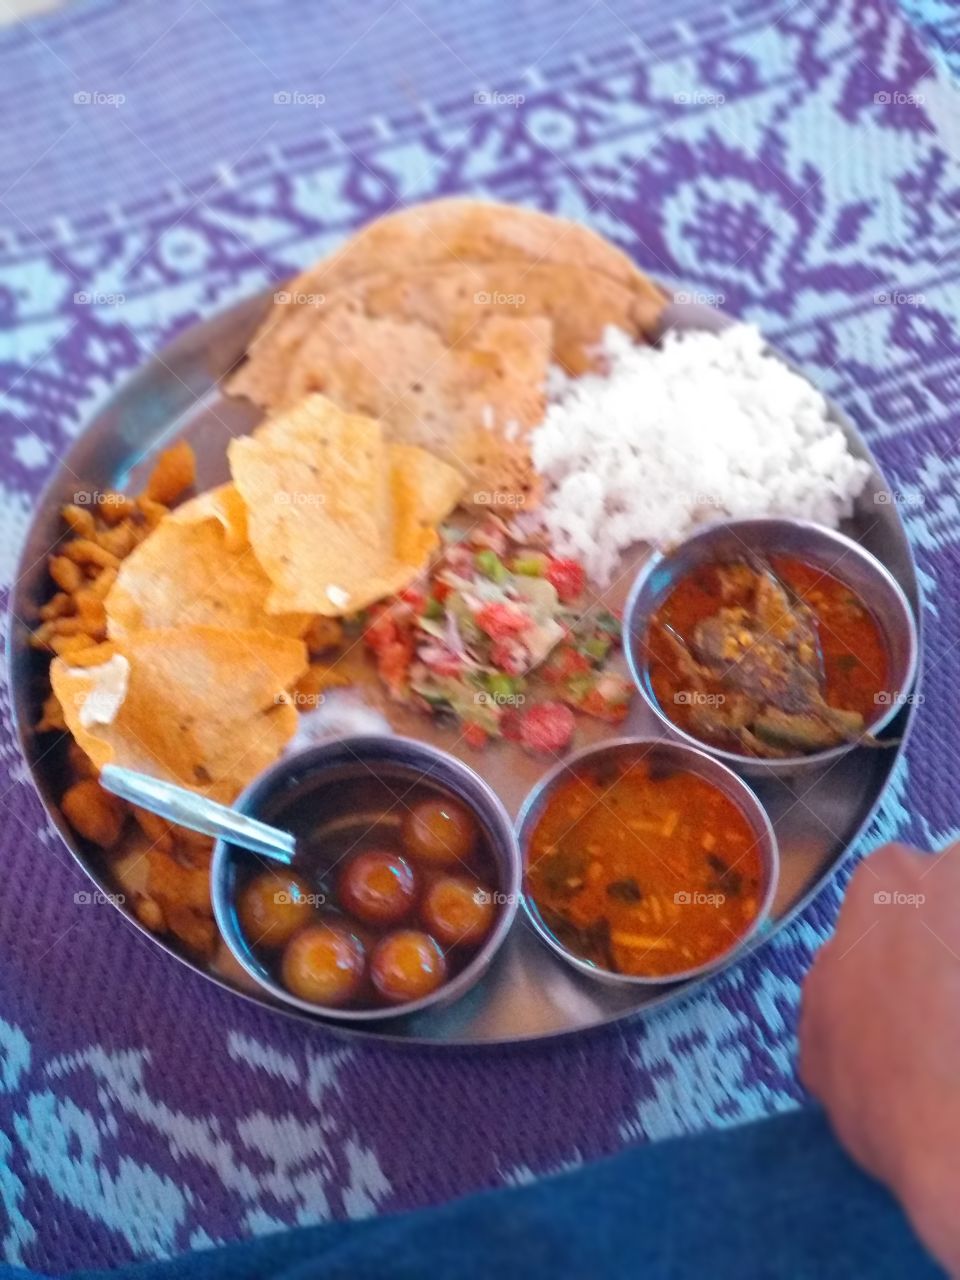 Maharashtra food